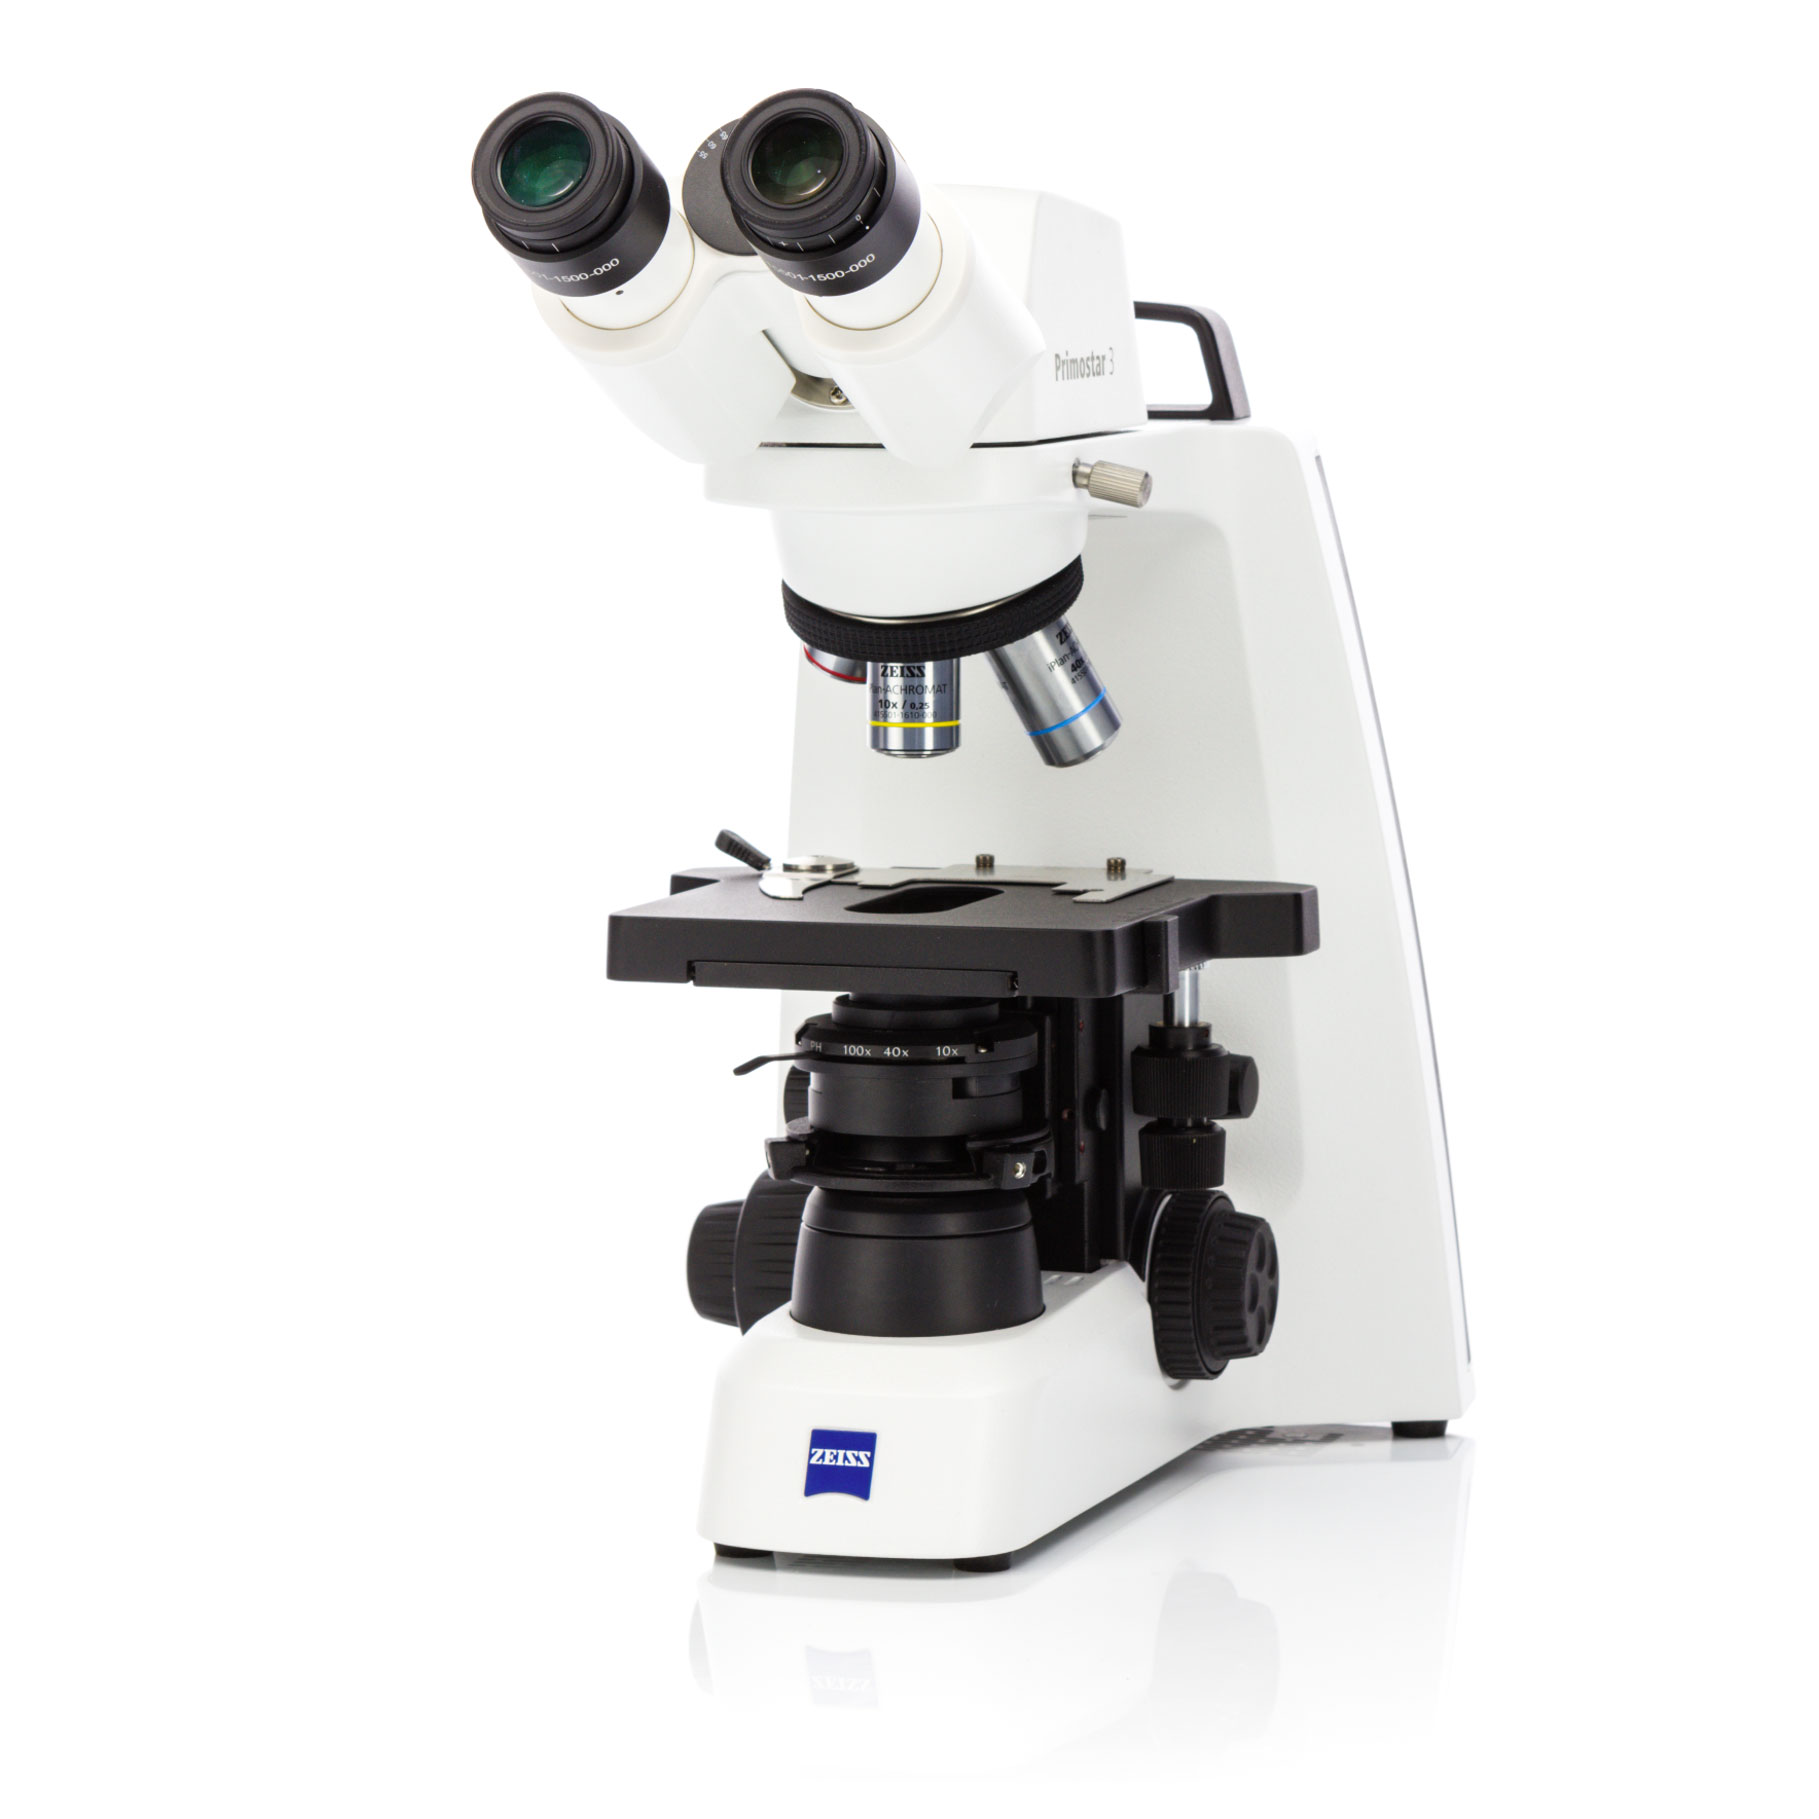 デジタル教室・ラボのルーチン作業向け顕微鏡